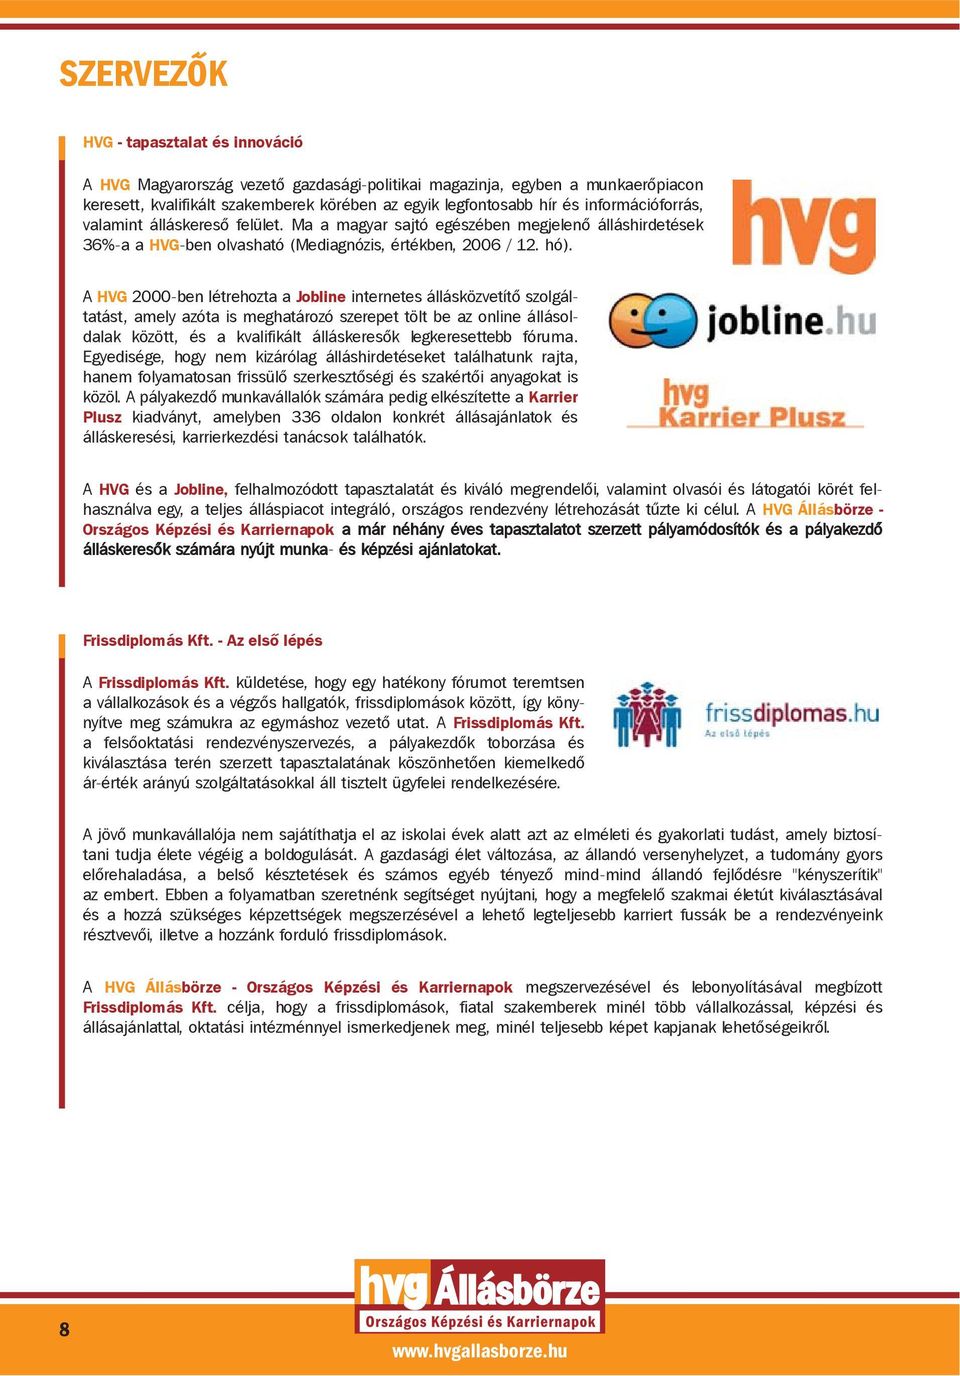 A HVG 2000-ben létrehozta a Jobline internetes állásközvetítõ szolgáltatást, amely azóta is meghatározó szerepet tölt be az online állásoldalak között, és a kvalifikált álláskeresõk legkeresettebb